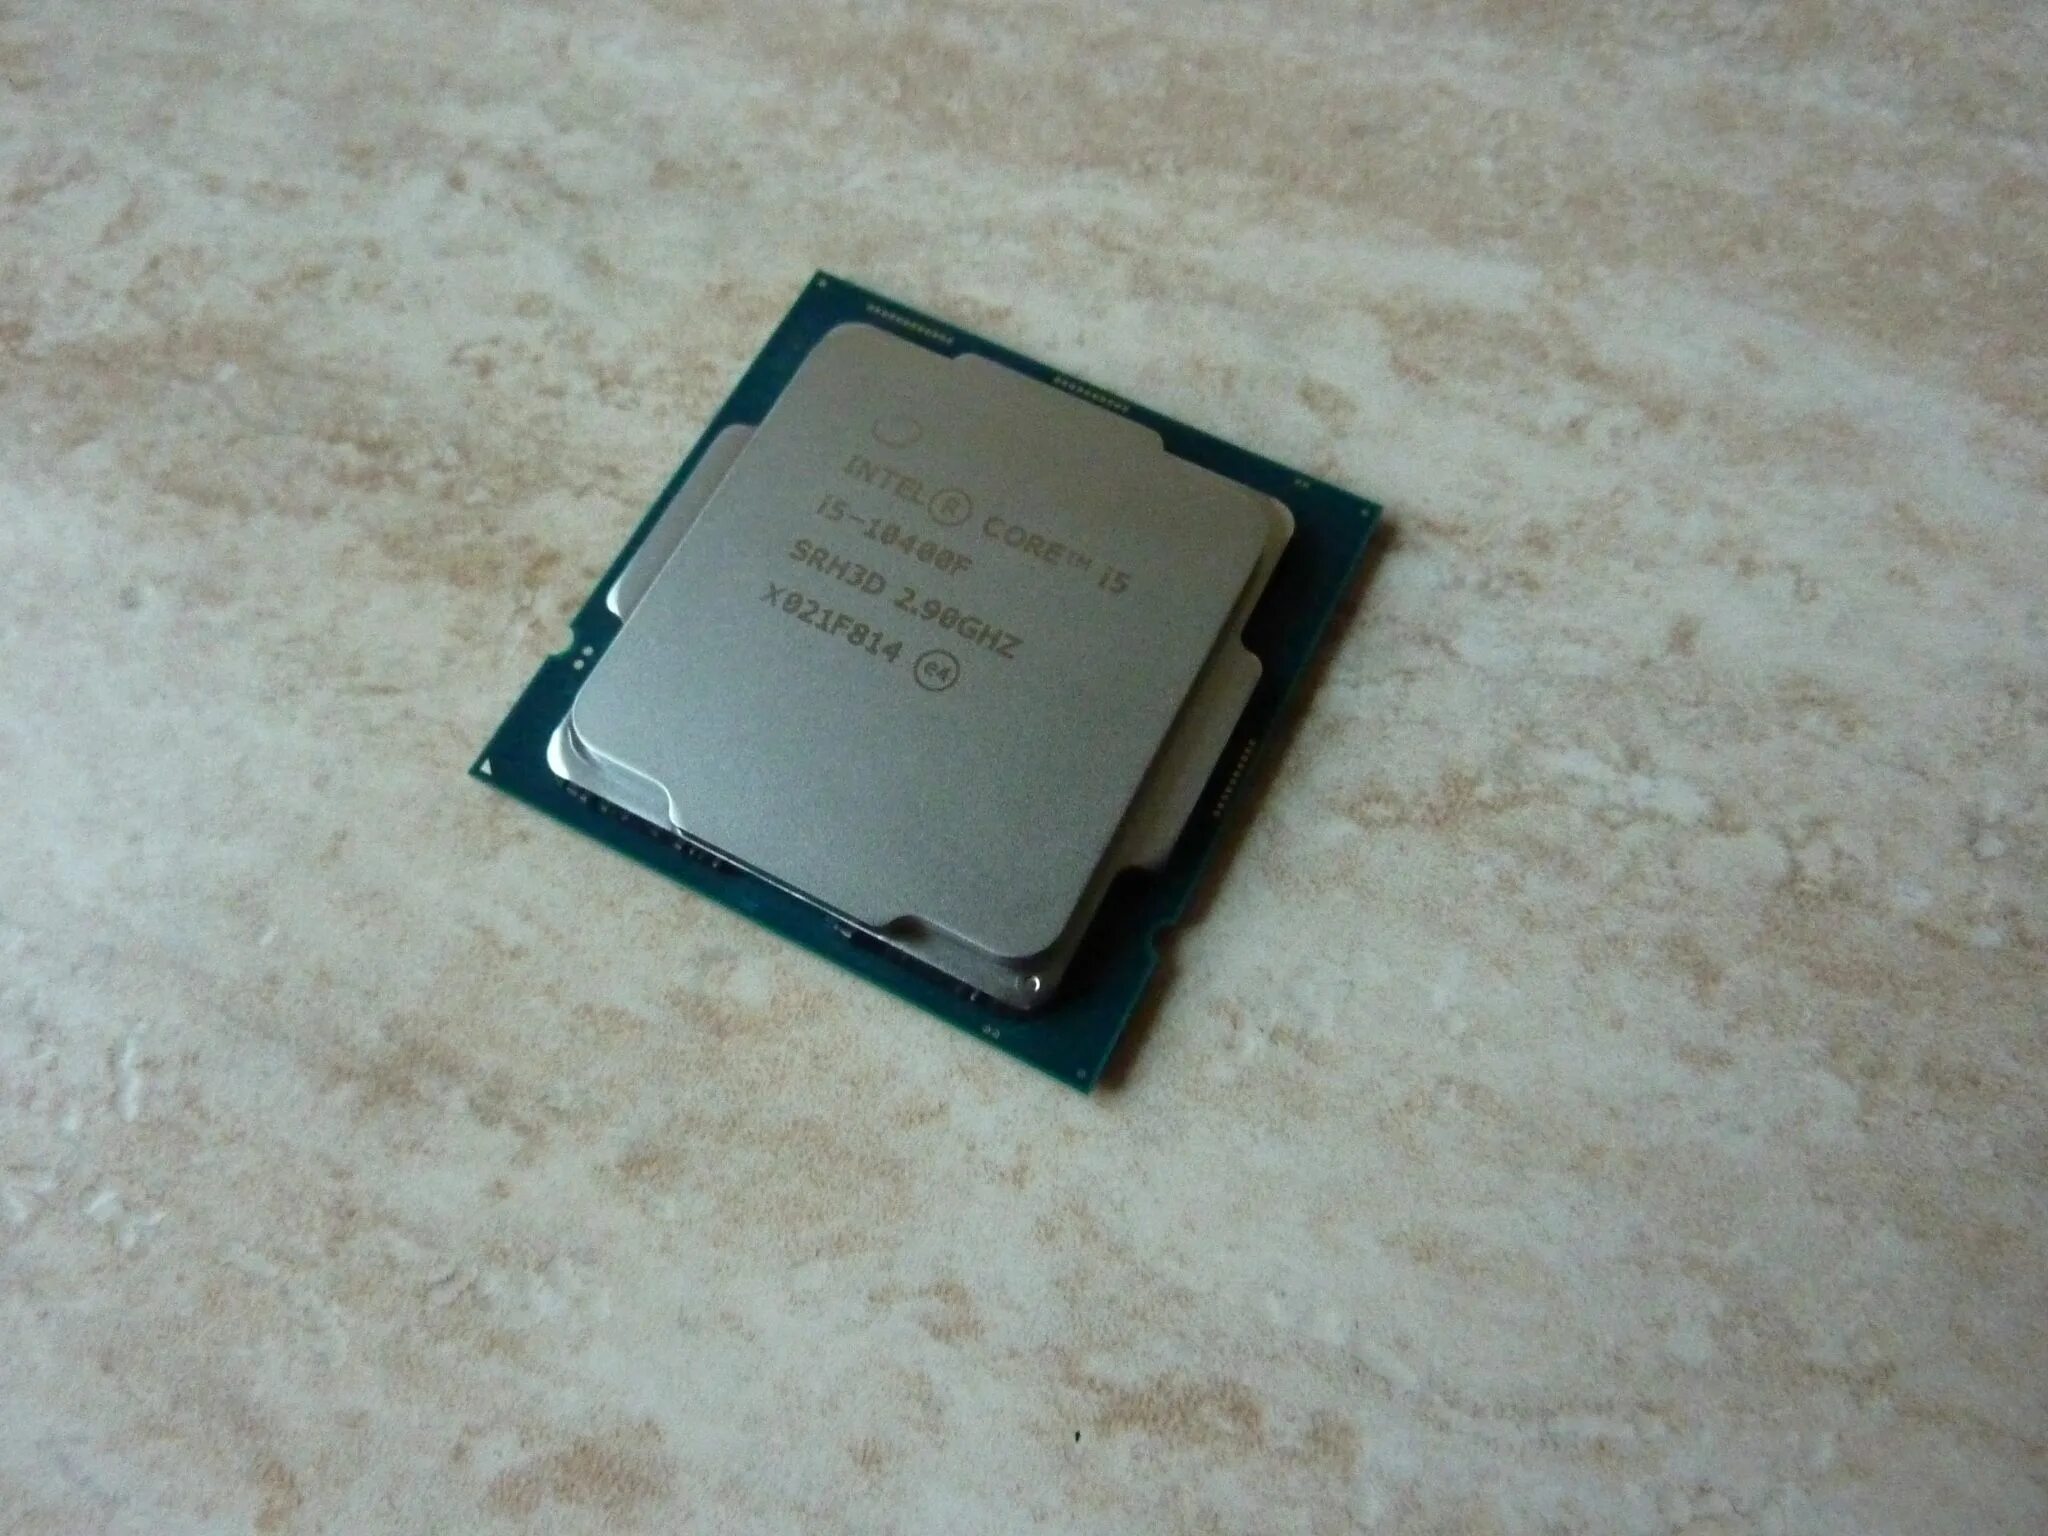 I5 10400f память. Core i5 10400f. Процессор Intel Core i5-10400f. Core i5-10400f lga1200. Процессор Intel Core i5 10400f, LGA 1200.